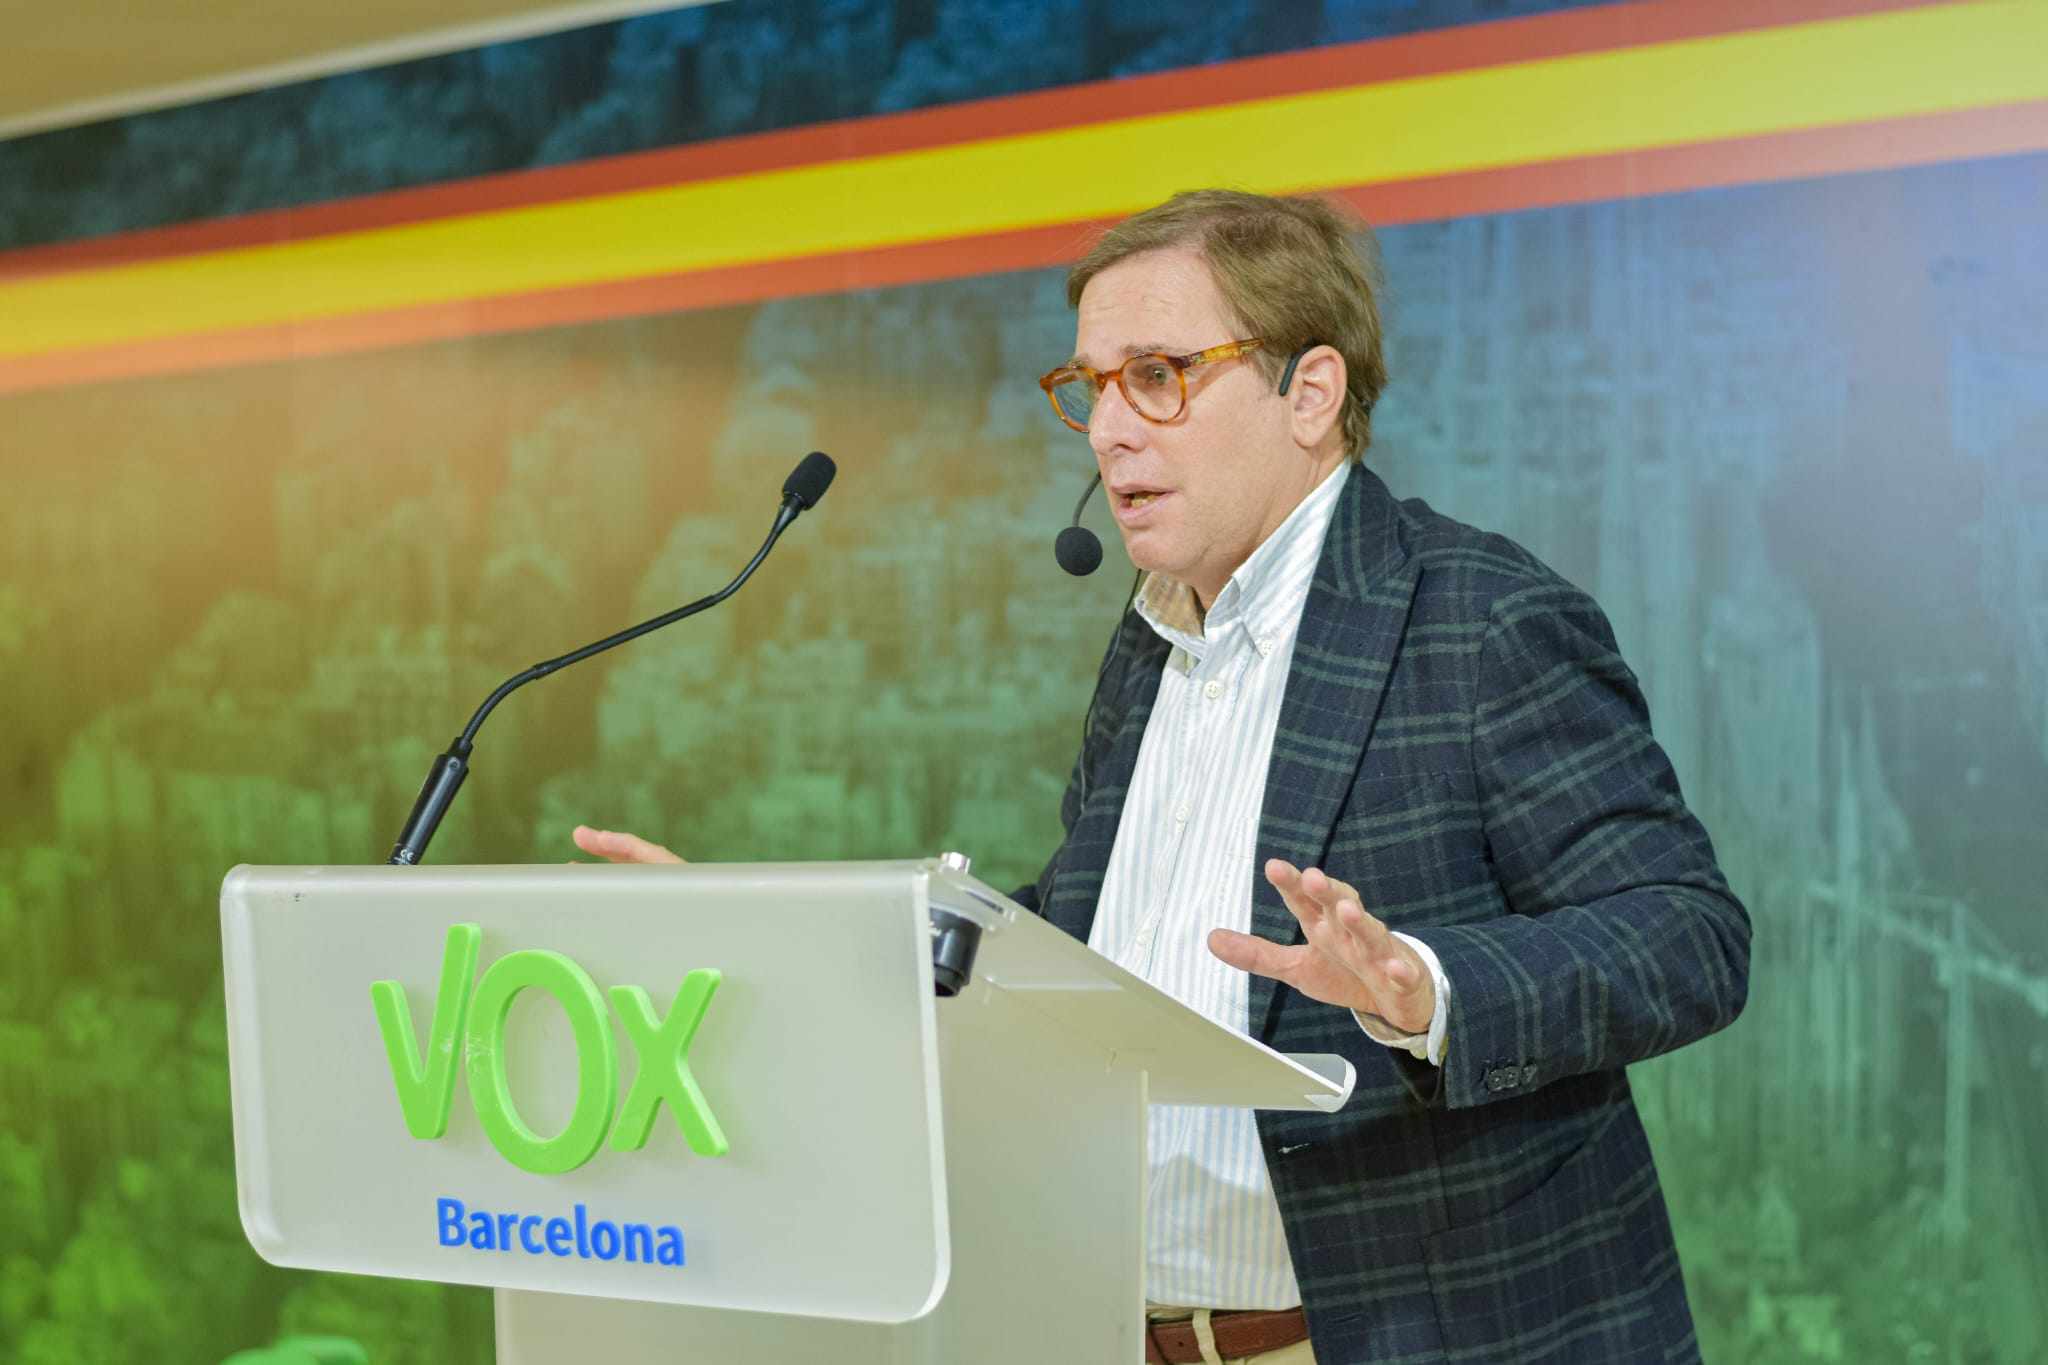 Vox inicia una campaña de recogida de firmas contra la amnistía en Barcelona